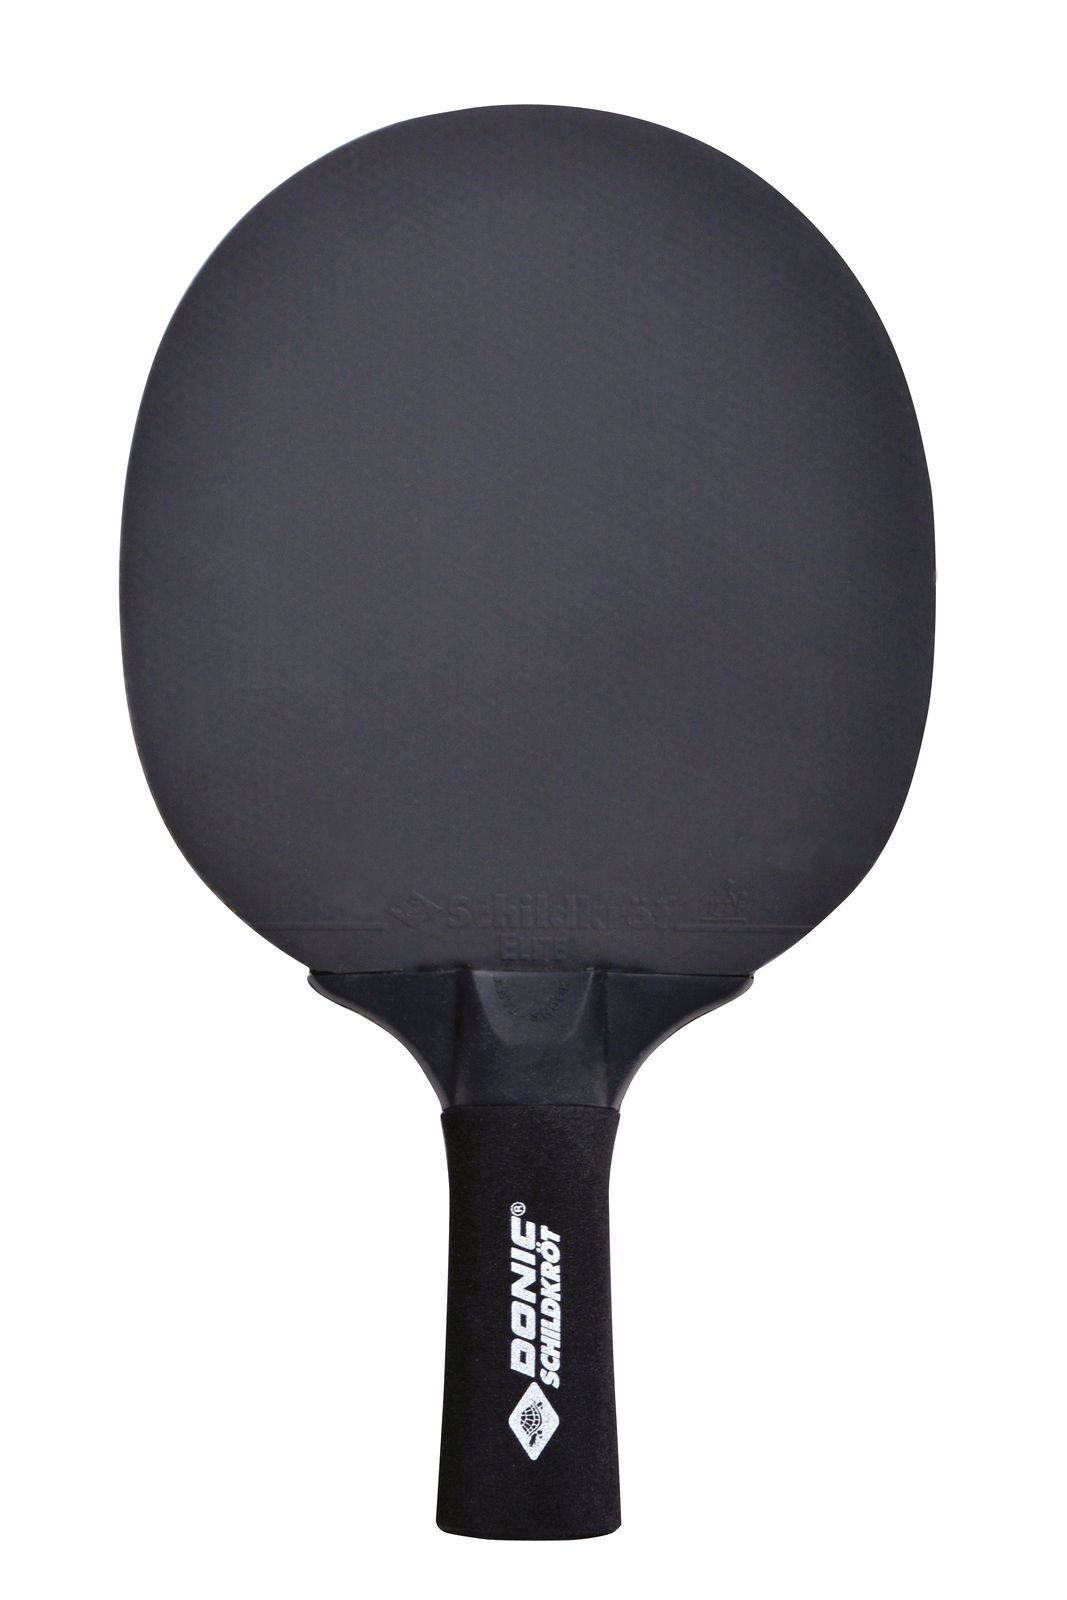 Donic-Schildkröt Tischtennisschläger Tischtennis Bat Line 500, Table Sensation Tennis Schläger Racket